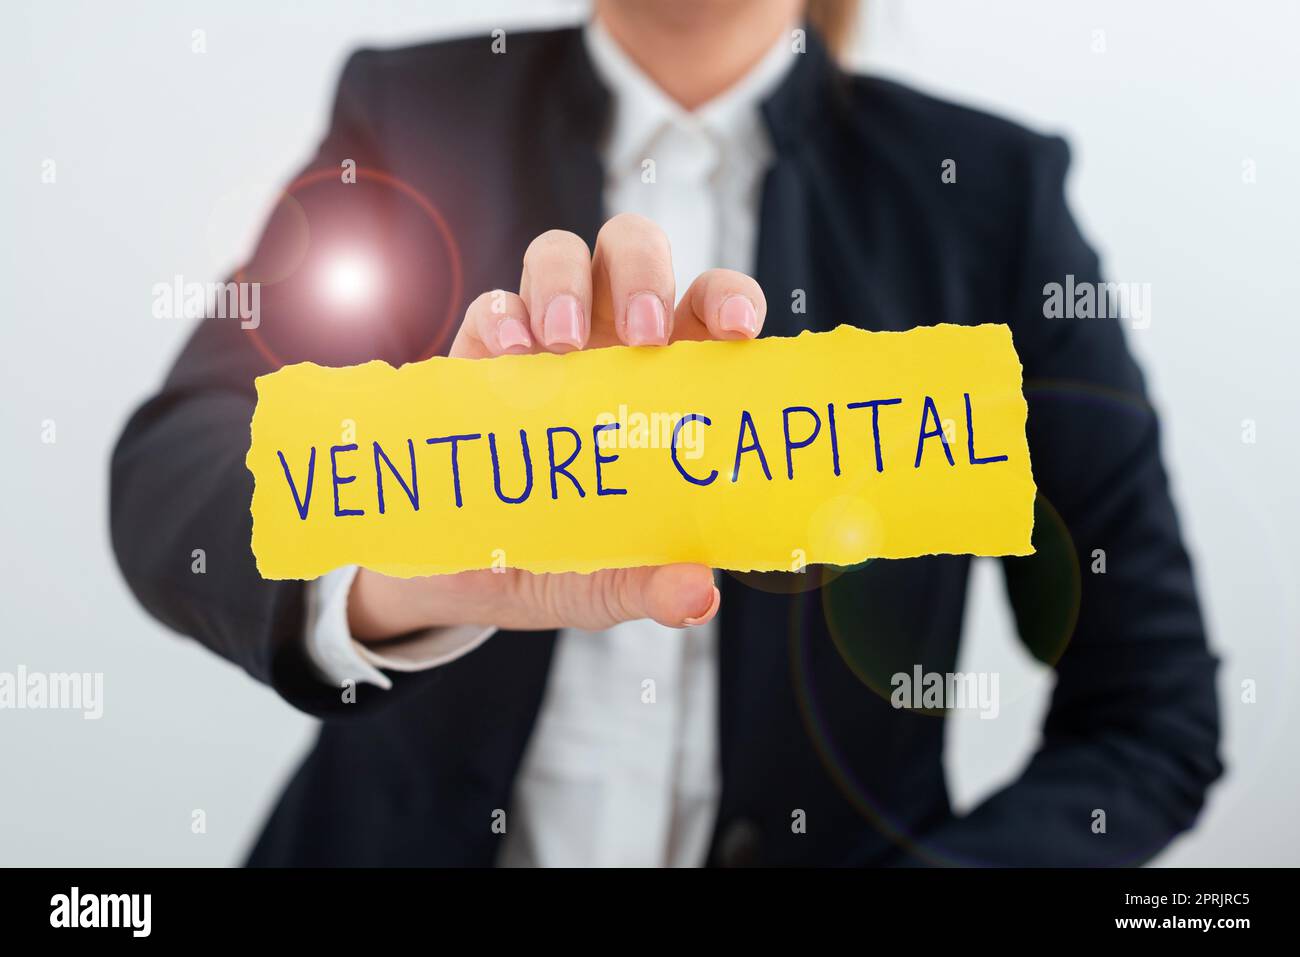 Handgeschriebener Text Venture Capitalfinancing, bereitgestellt von Firmen für kleine Unternehmen in der Frühphase. Unternehmensübersichtsfinanzierung durch Unternehmen für kleine Unternehmen in der Anfangsphase Stockfoto